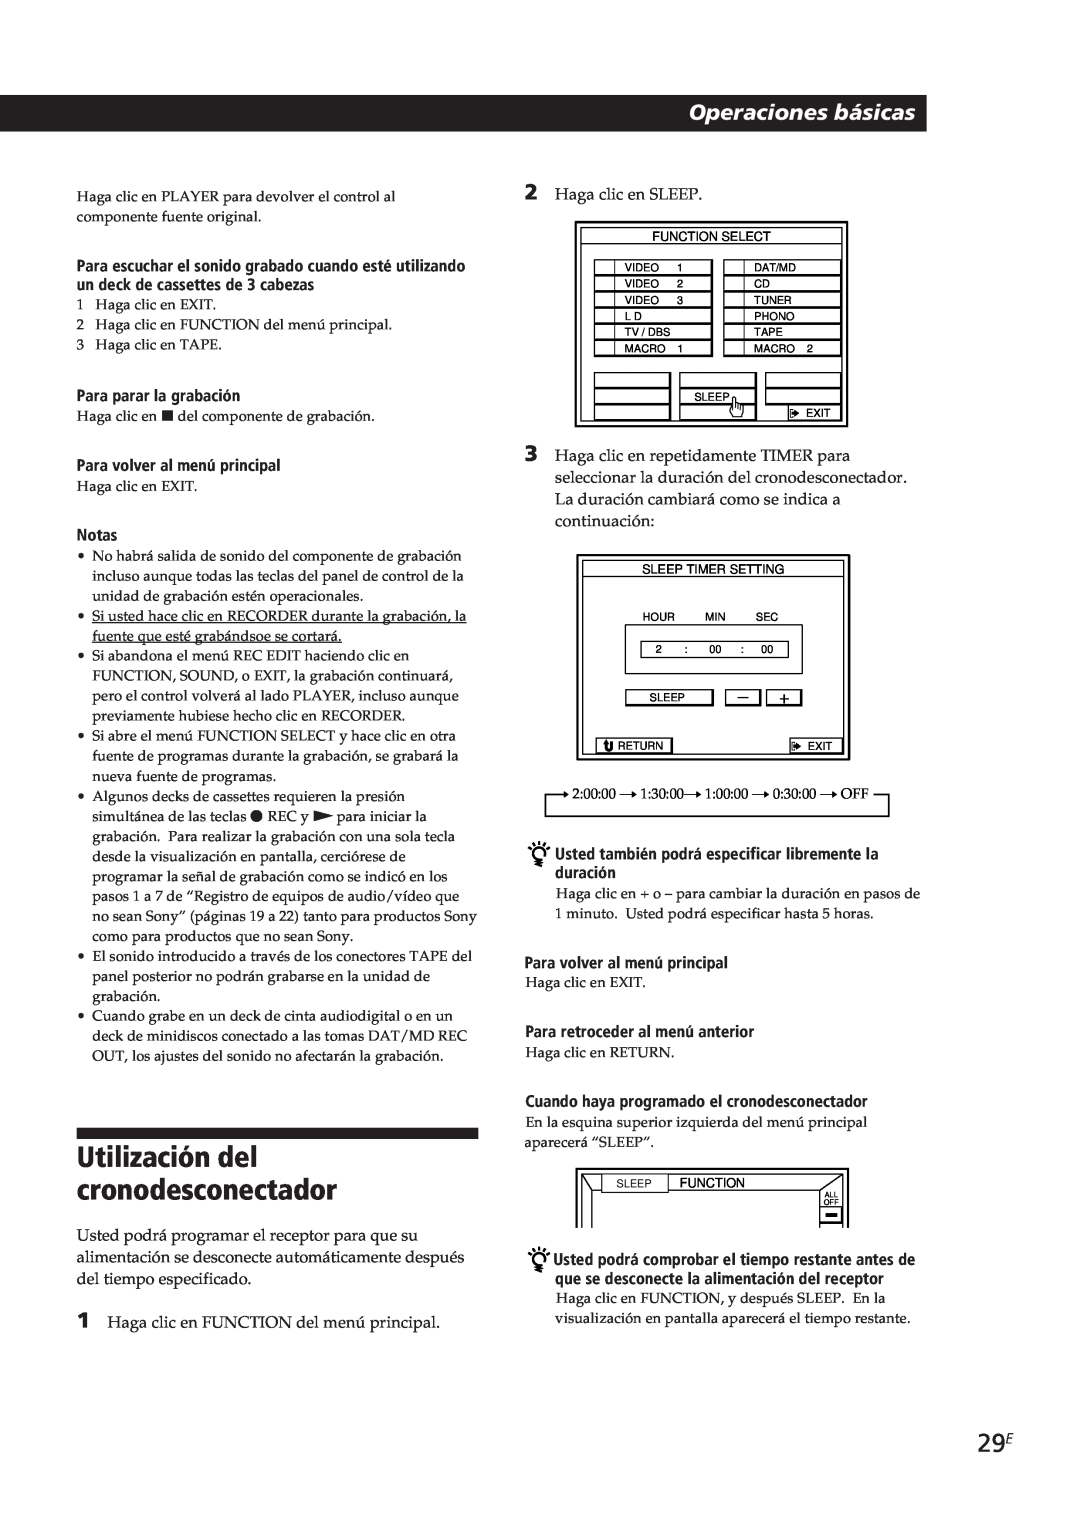 Sony STR-DE805G manual Utilización del cronodesconectador, Operaciones básicas, Para parar la grabación, Notas 